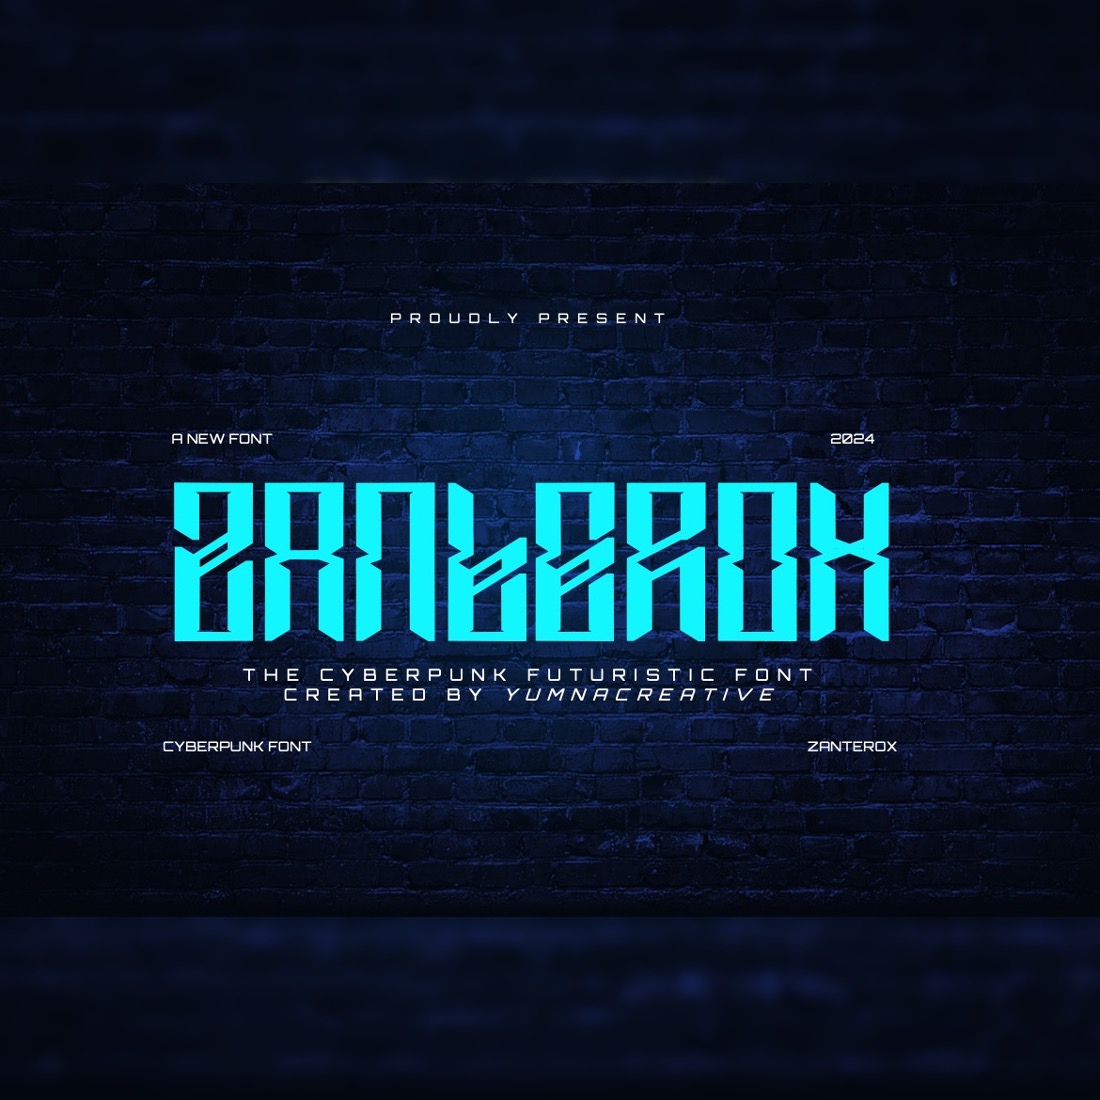 Zanterox - Cyberpunk Futuristic Font preview image.